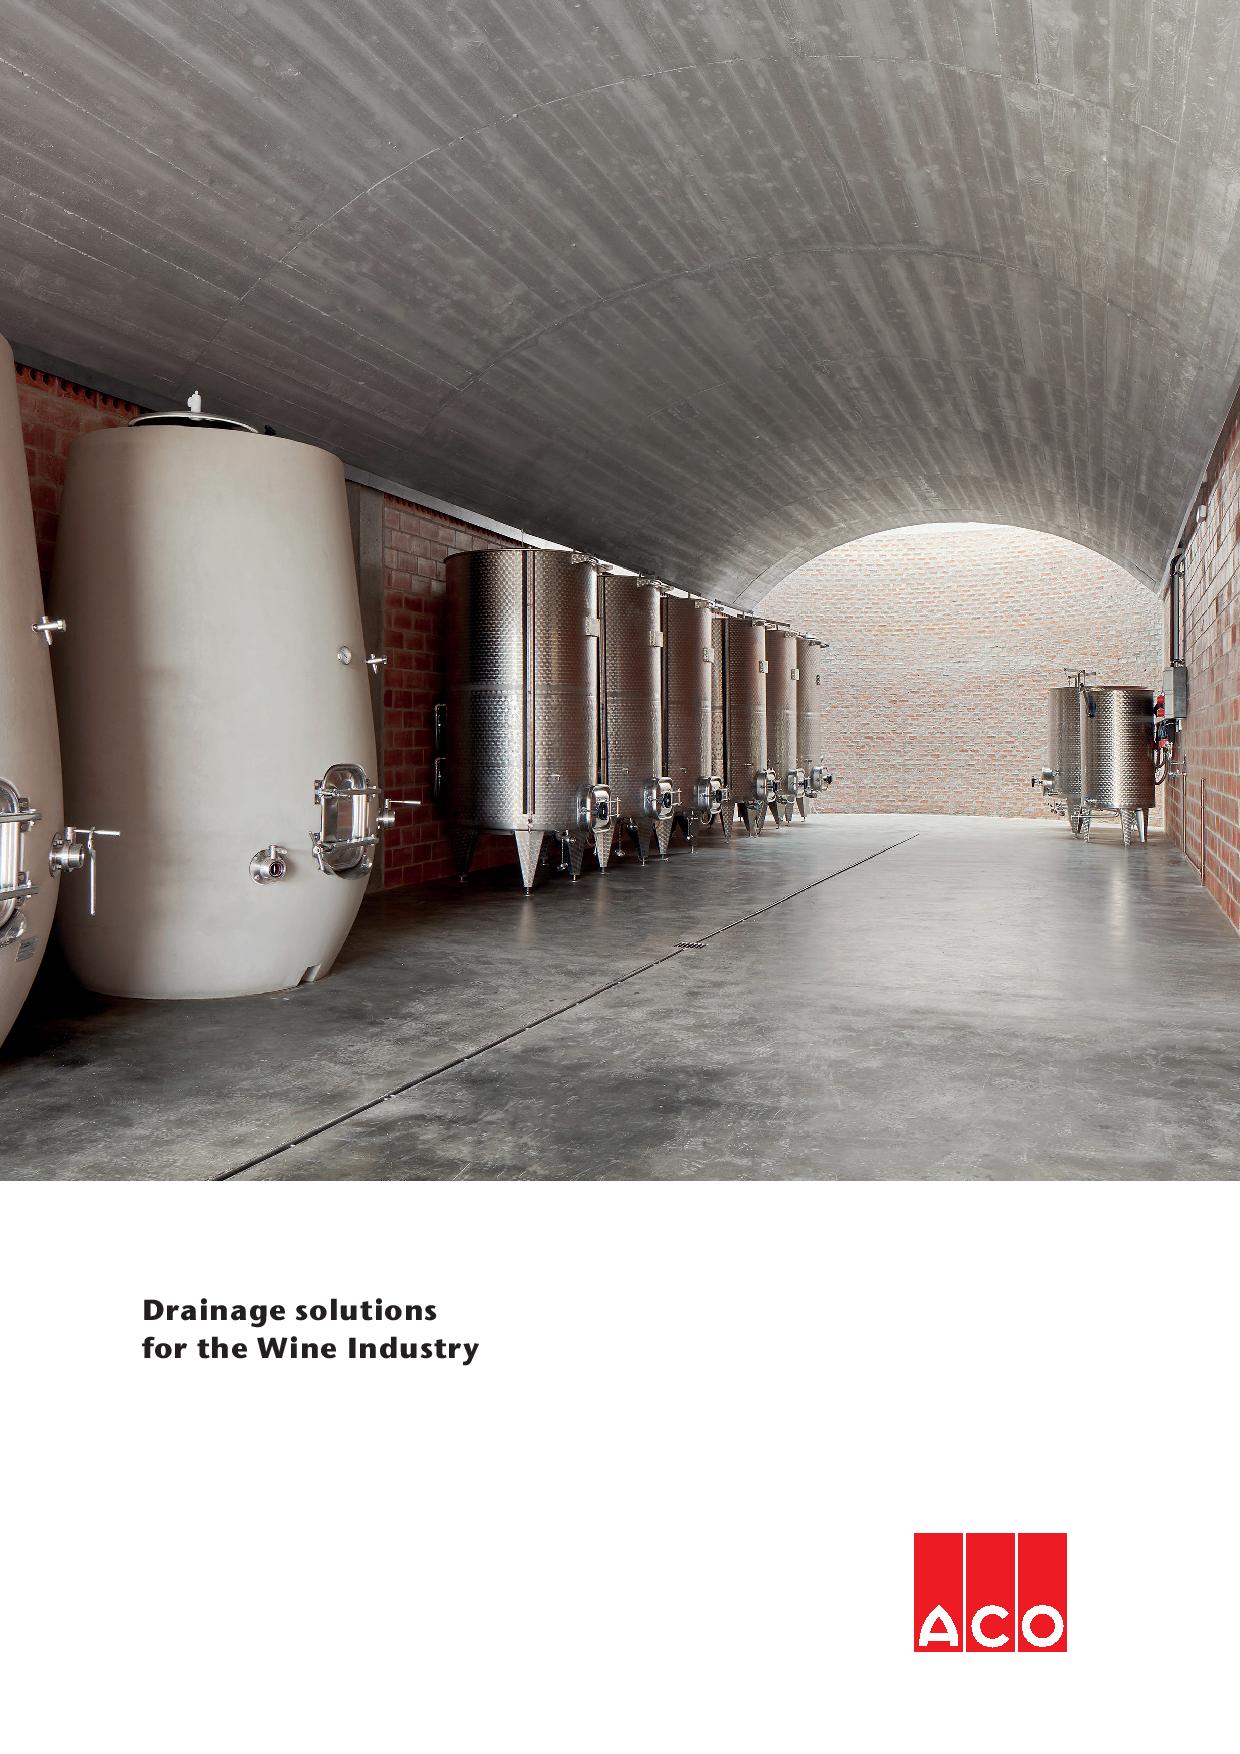 ACO rešenja za odvodnjavanje u industriji vina